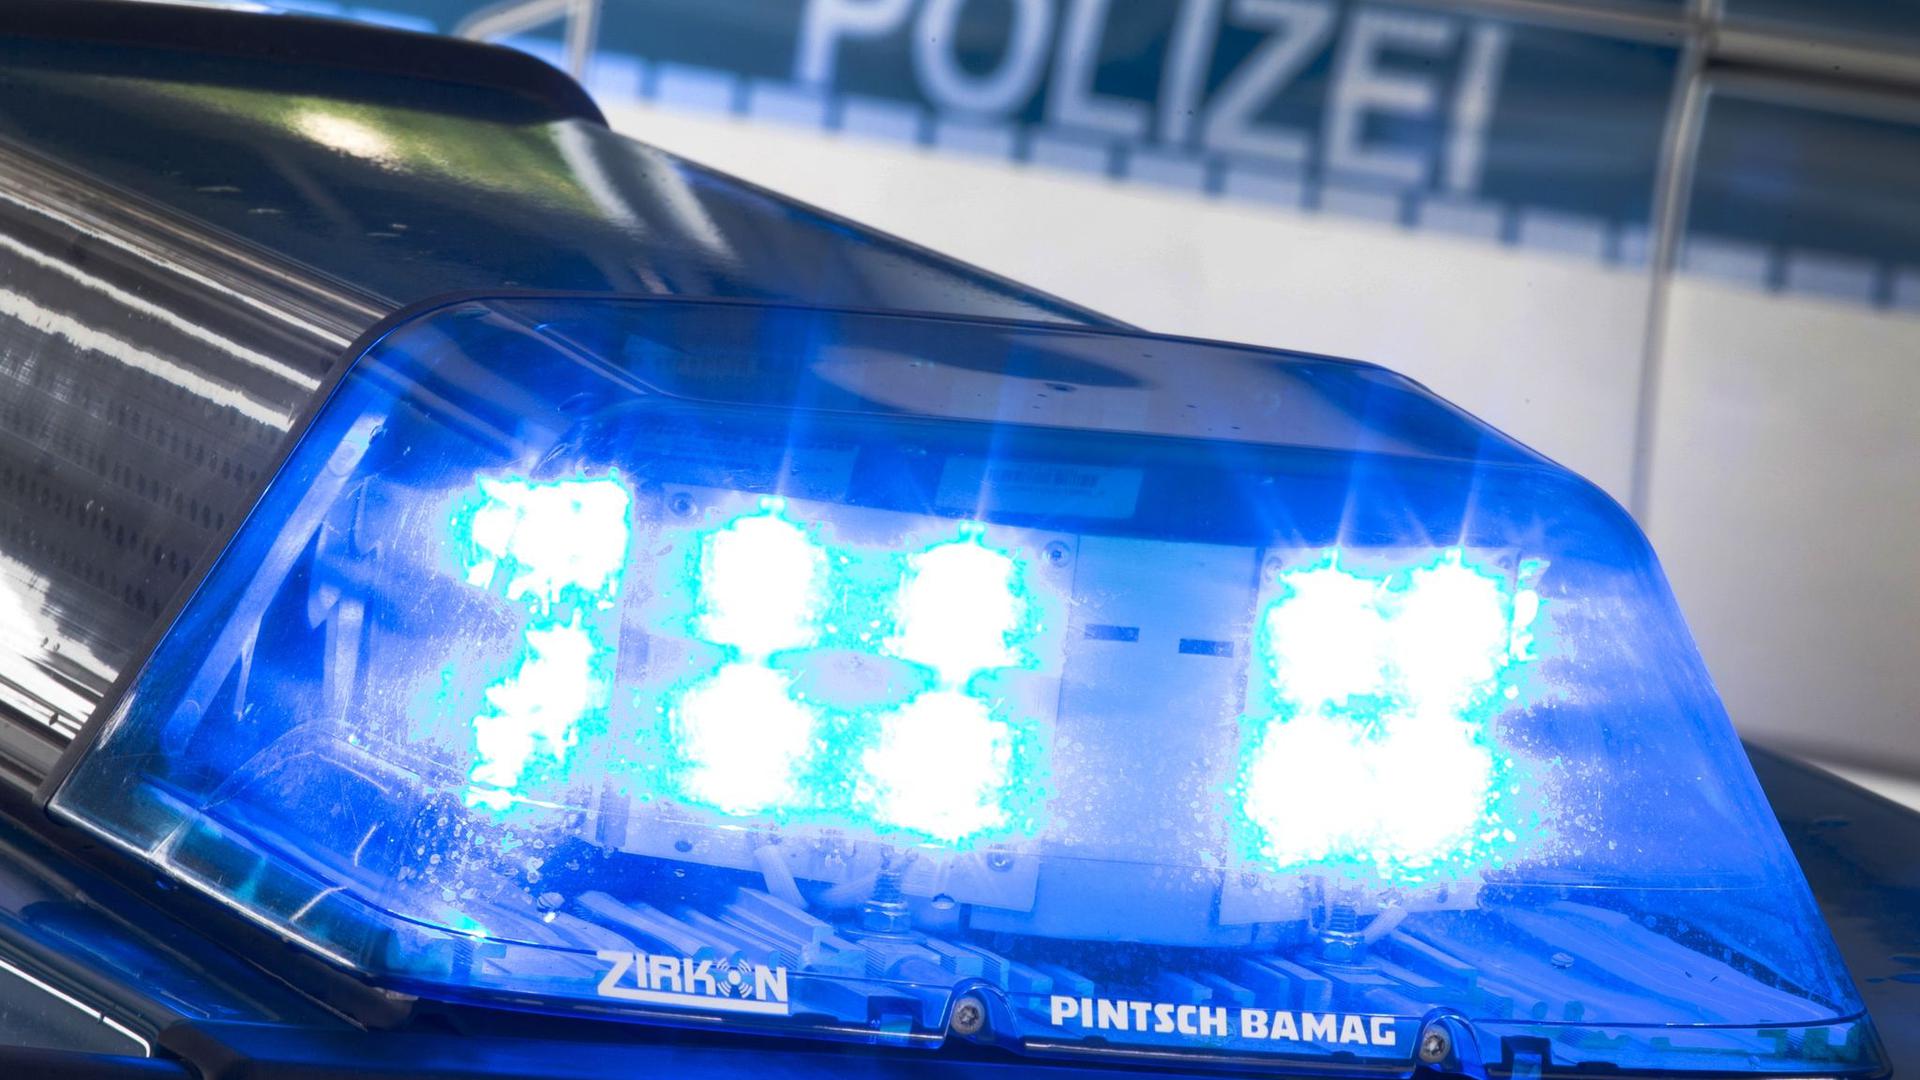 Ein Blaulicht auf dem Dach eines Polizeiwagens.